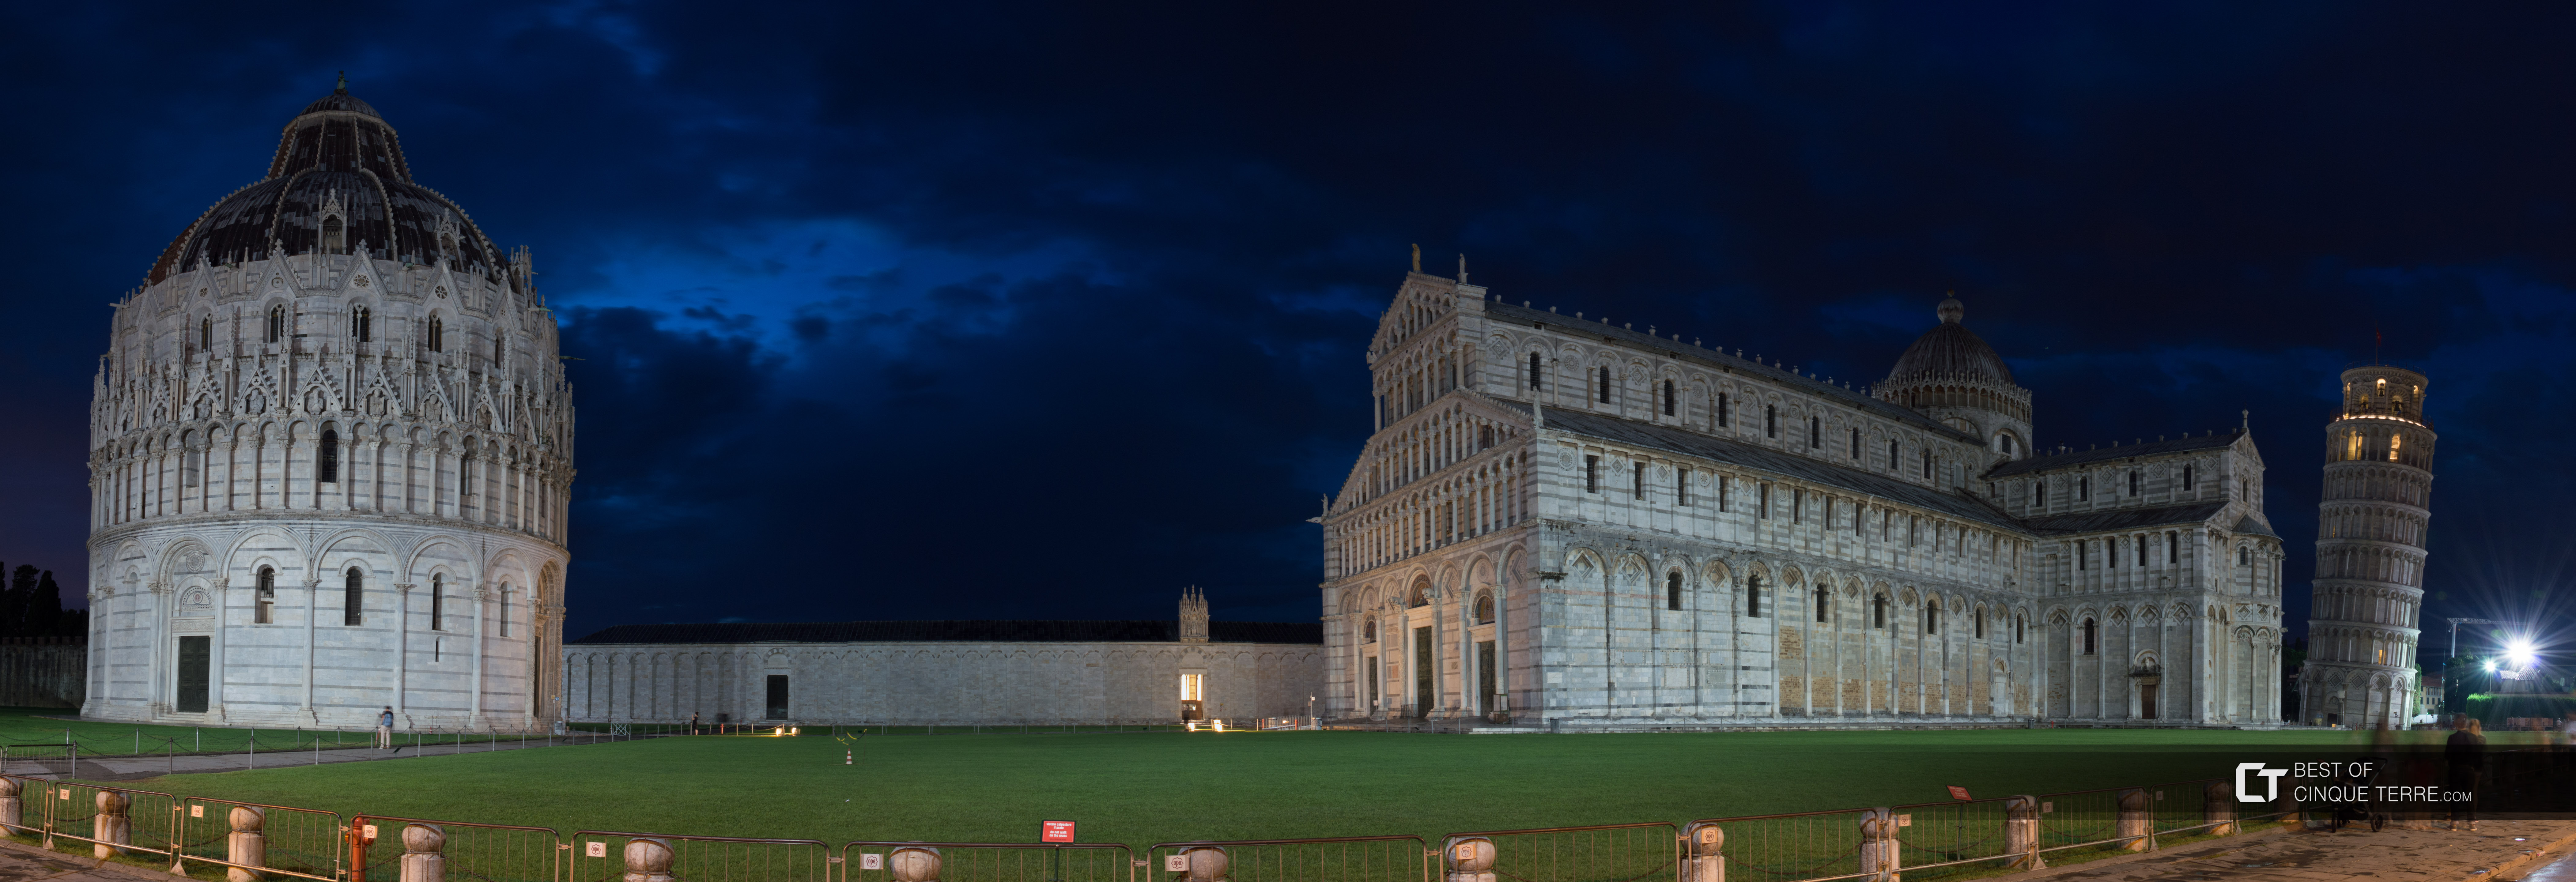 Piazza dei Miracoli, panorama notturna, Pisa, Italia